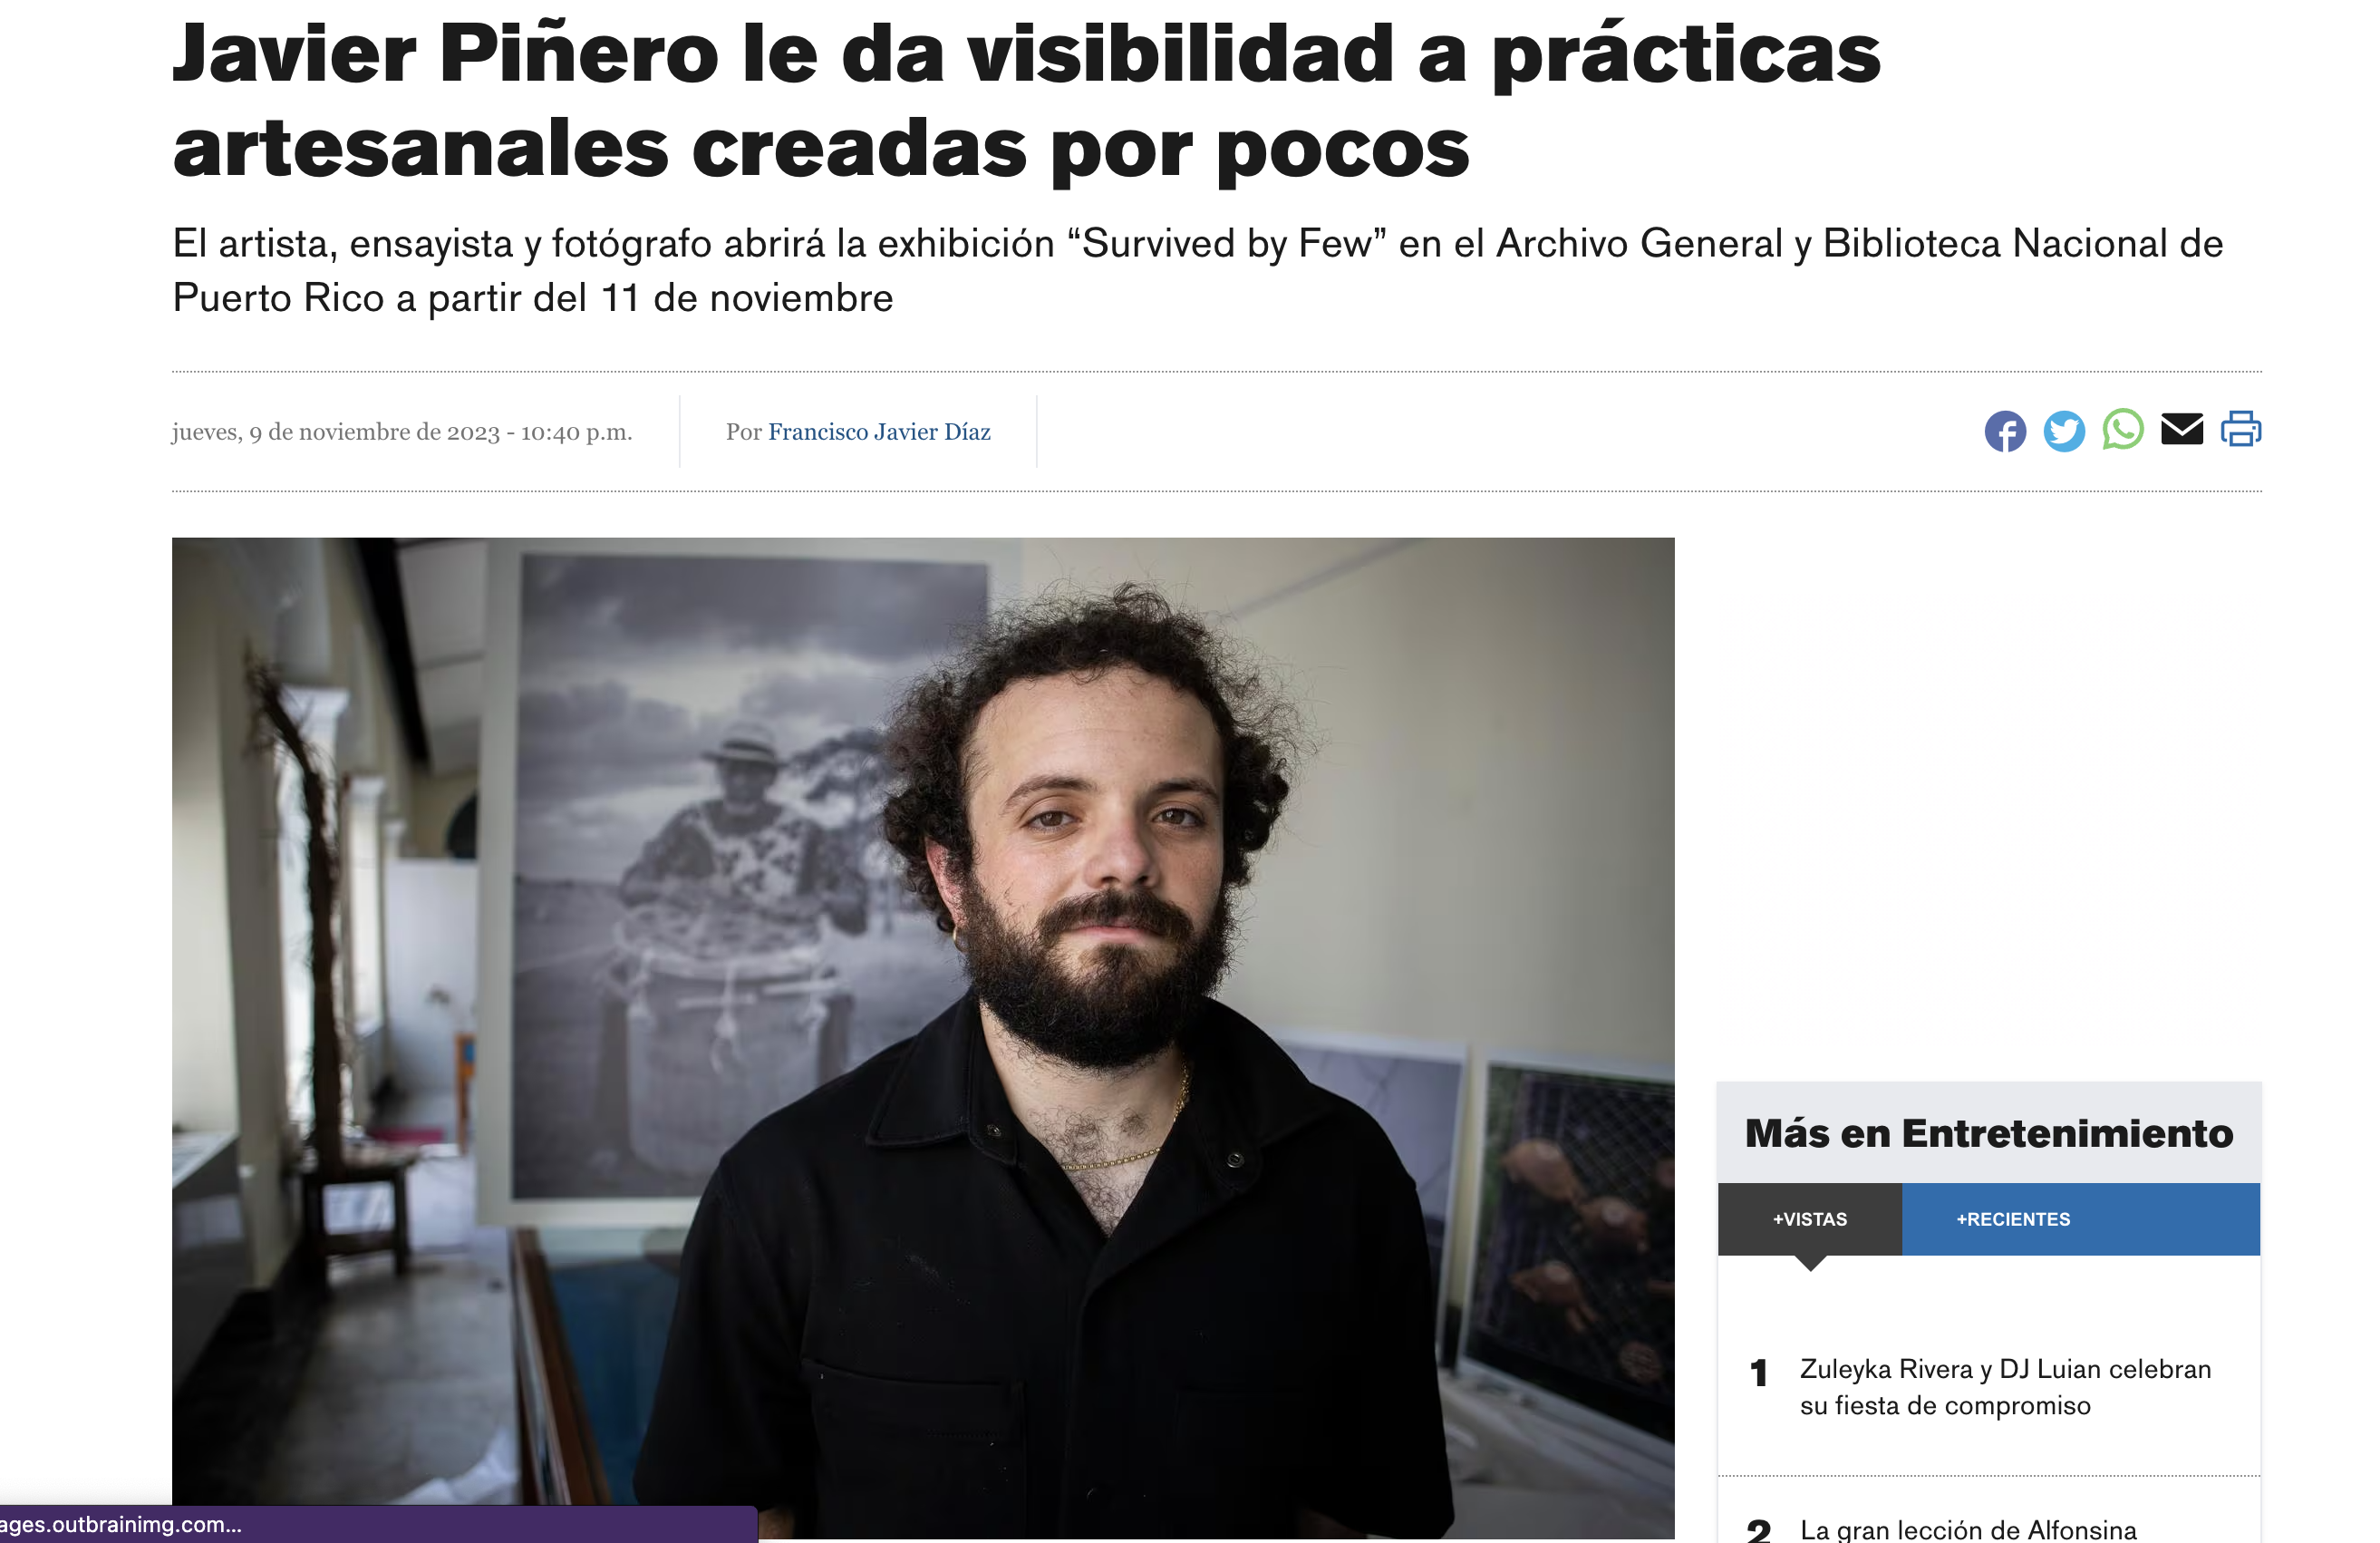 Tearsheets - El Nuevo Día - Javier Piñero le da visibilidad a prácticas artesanales creadas por pocos